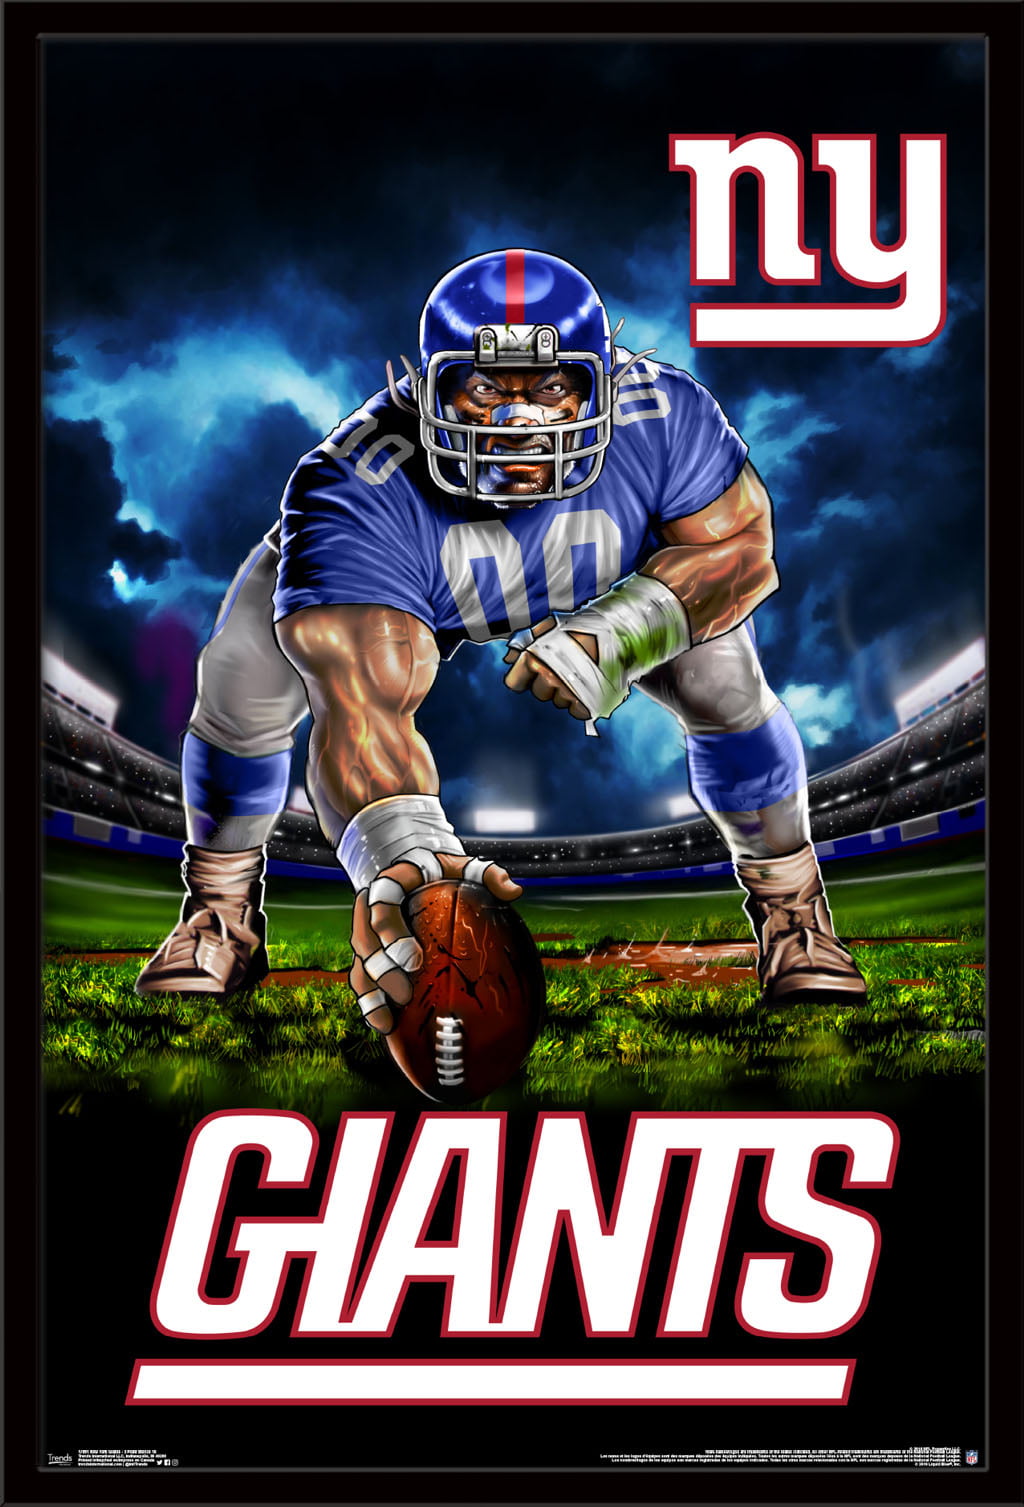 NFL New York Giants 3D Logo Series Wall Art - 12x12 2507439 - The Home Depot